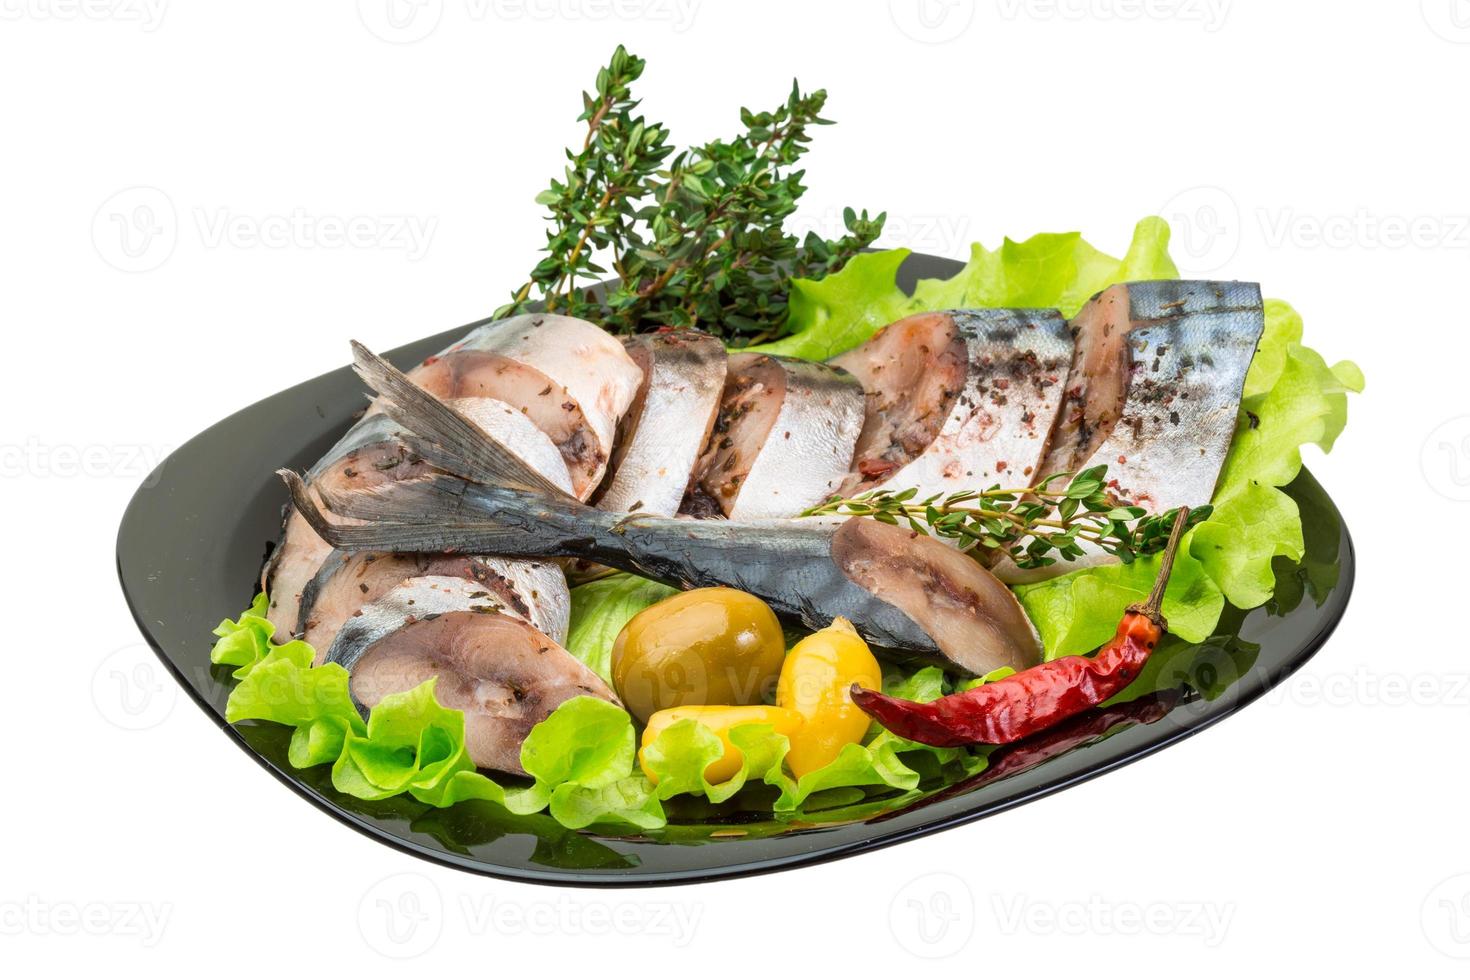 makrillfisk, skivad på en tallrik med sallad foto